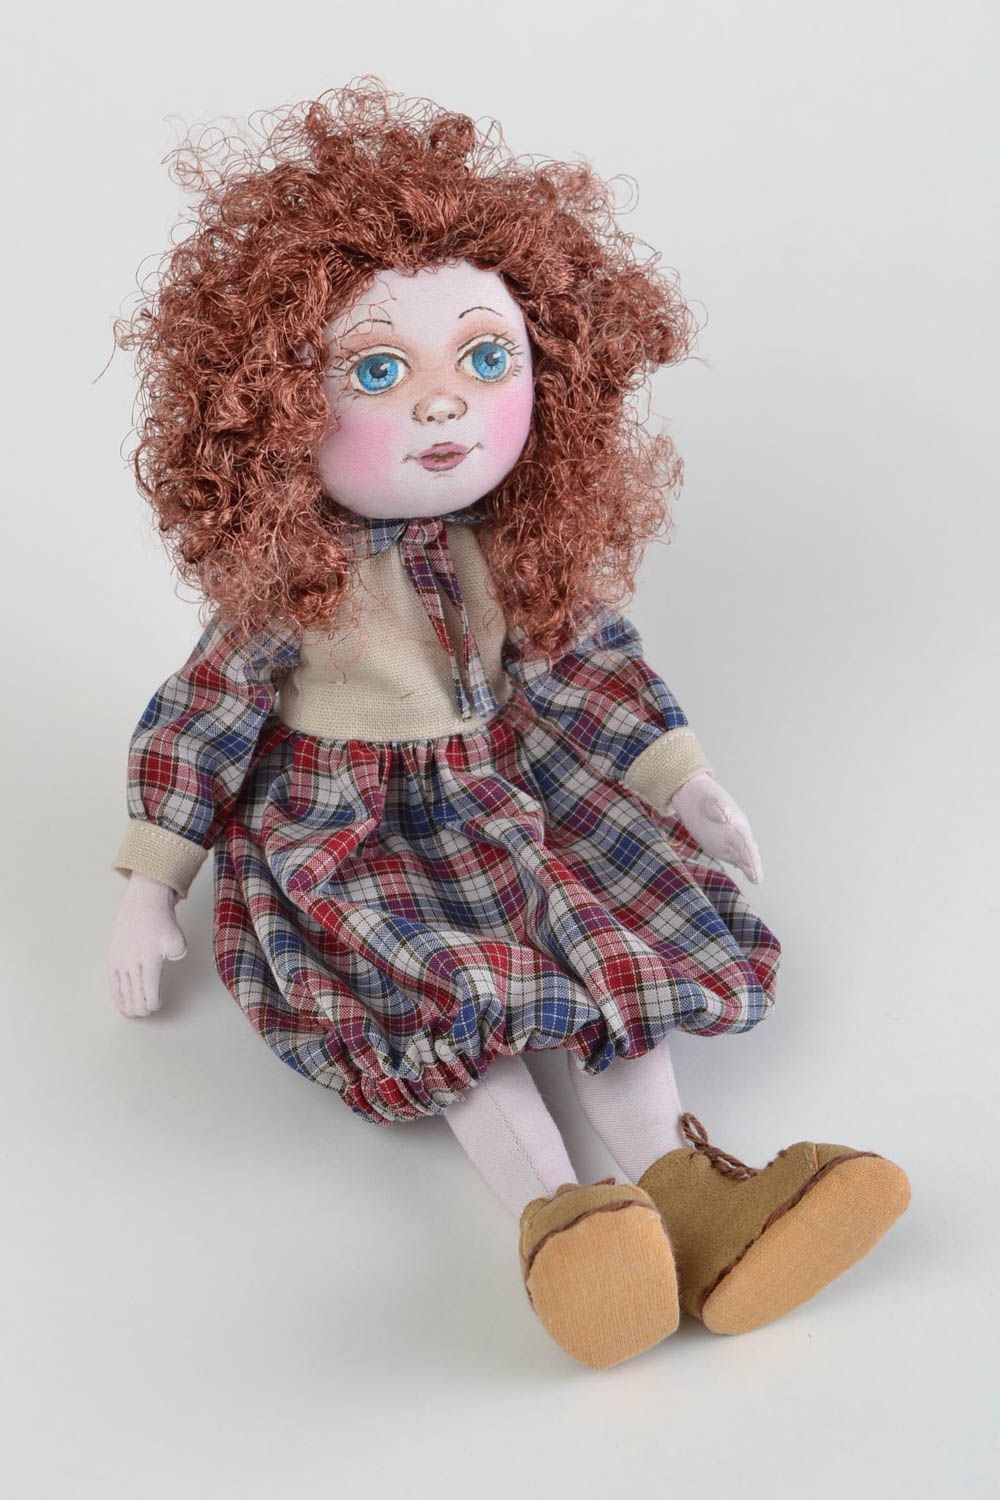 Кукла для интерьера и детей тканевая мягкая игрушка ручной работы Яночка фото 1